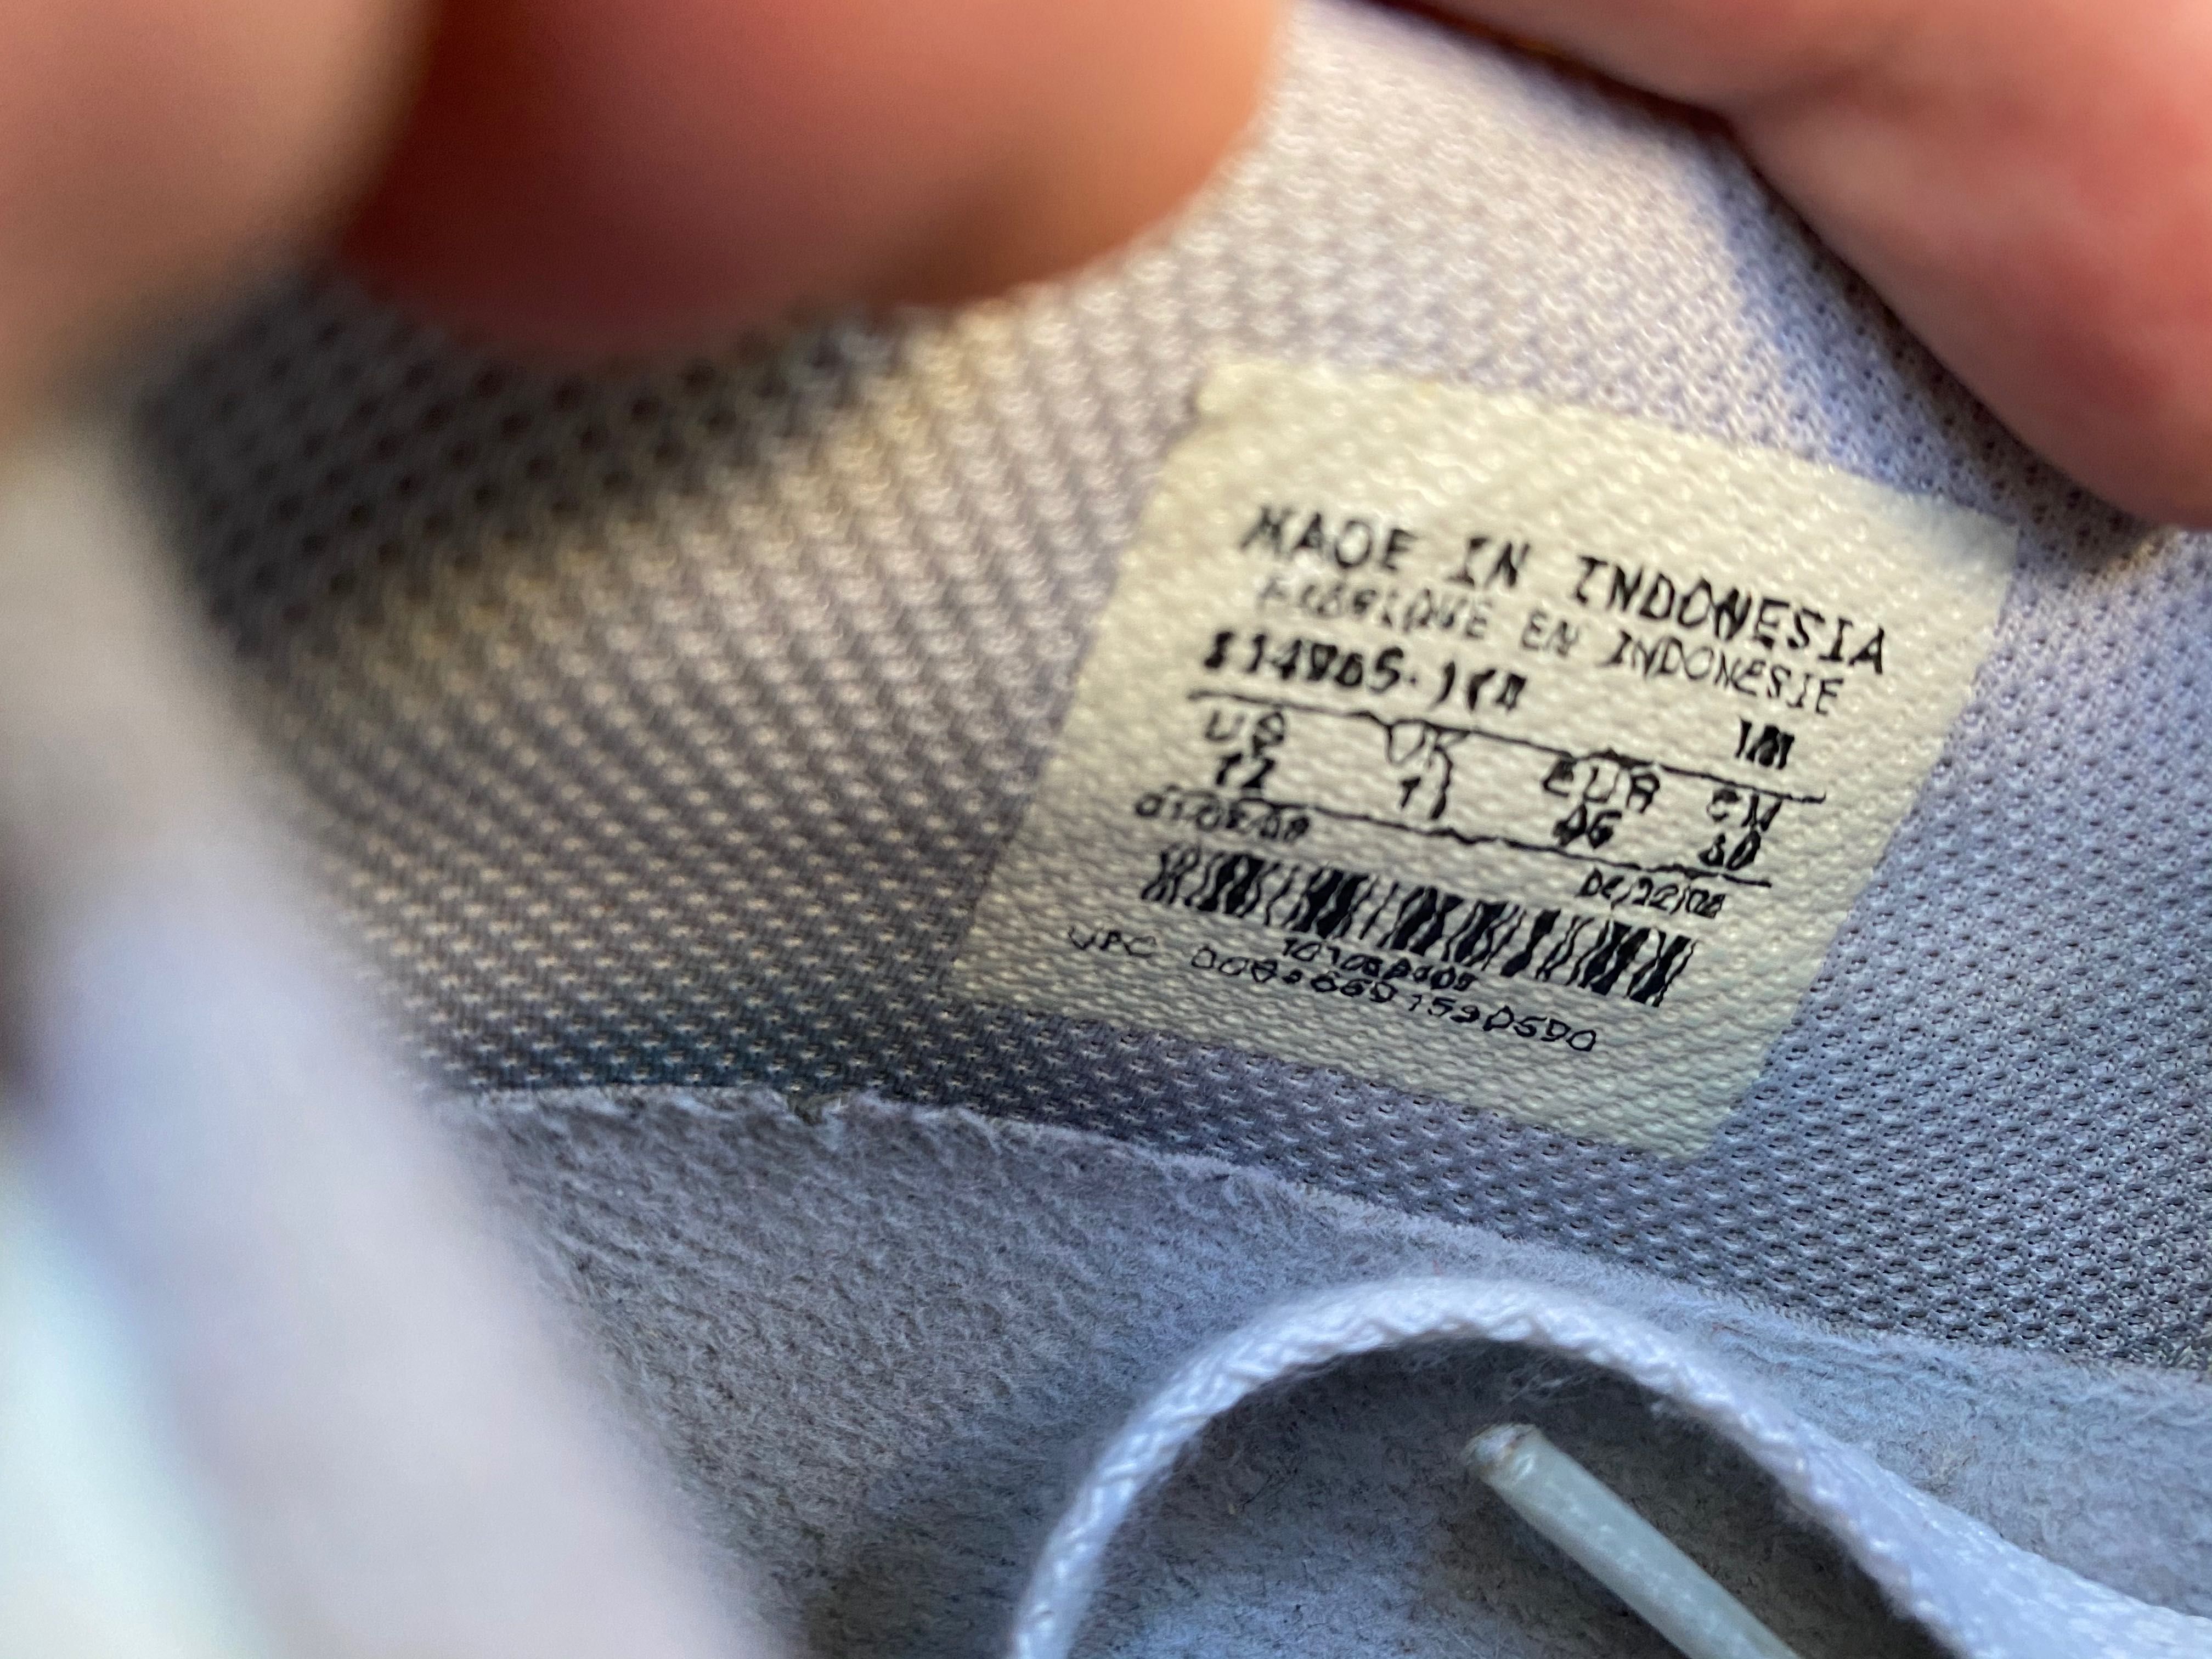 Мокасины Кеды Nike Capri 2 White размер 45,5 - 46